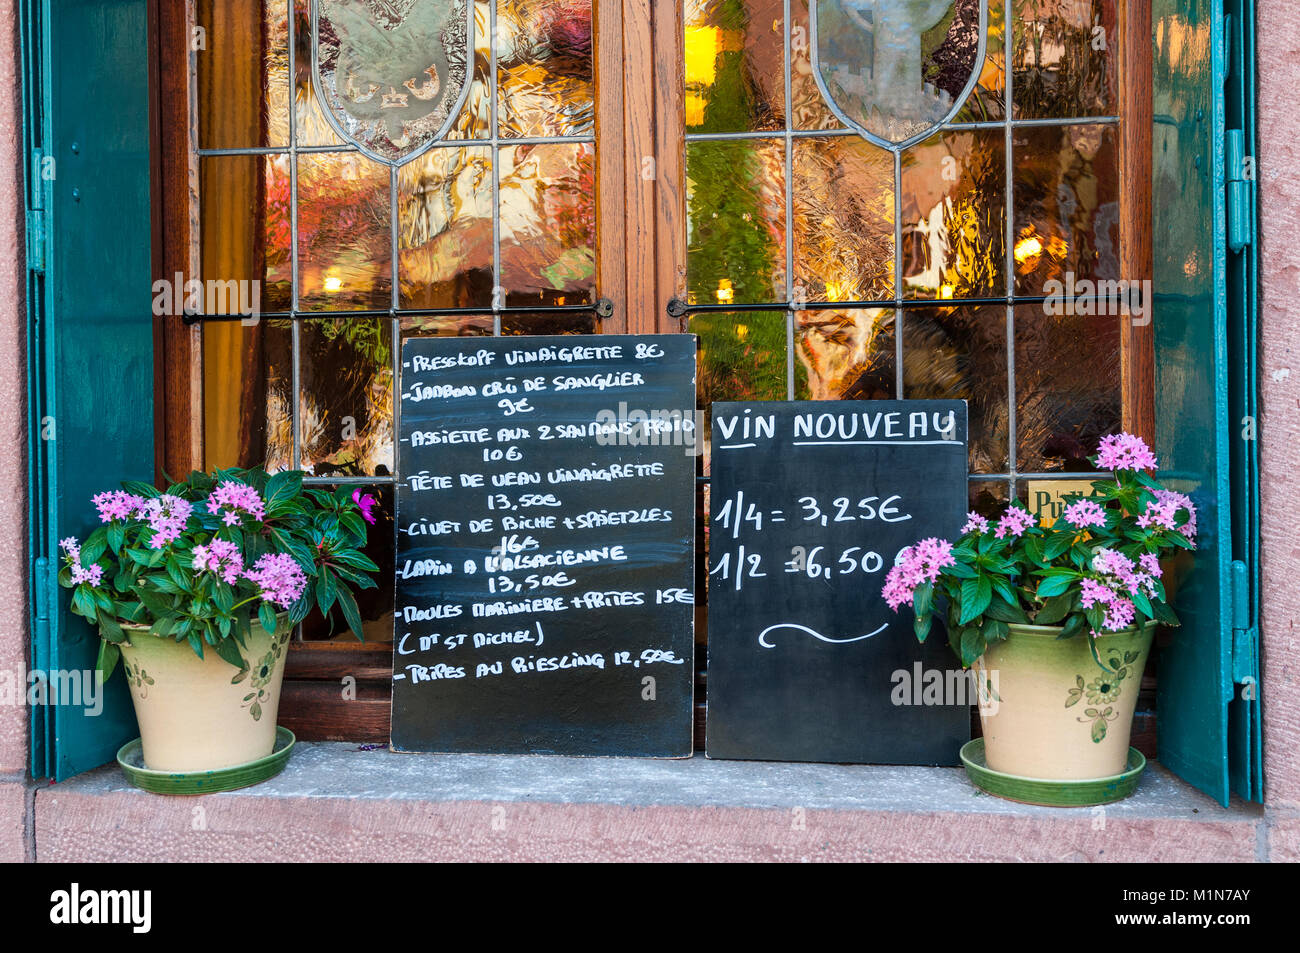 ALSACE FRANCE Tableau noir afficher les menus de spécialités locales et de vin nouveau à l'extérieur bon marché typique restaurant Alsace Banque D'Images